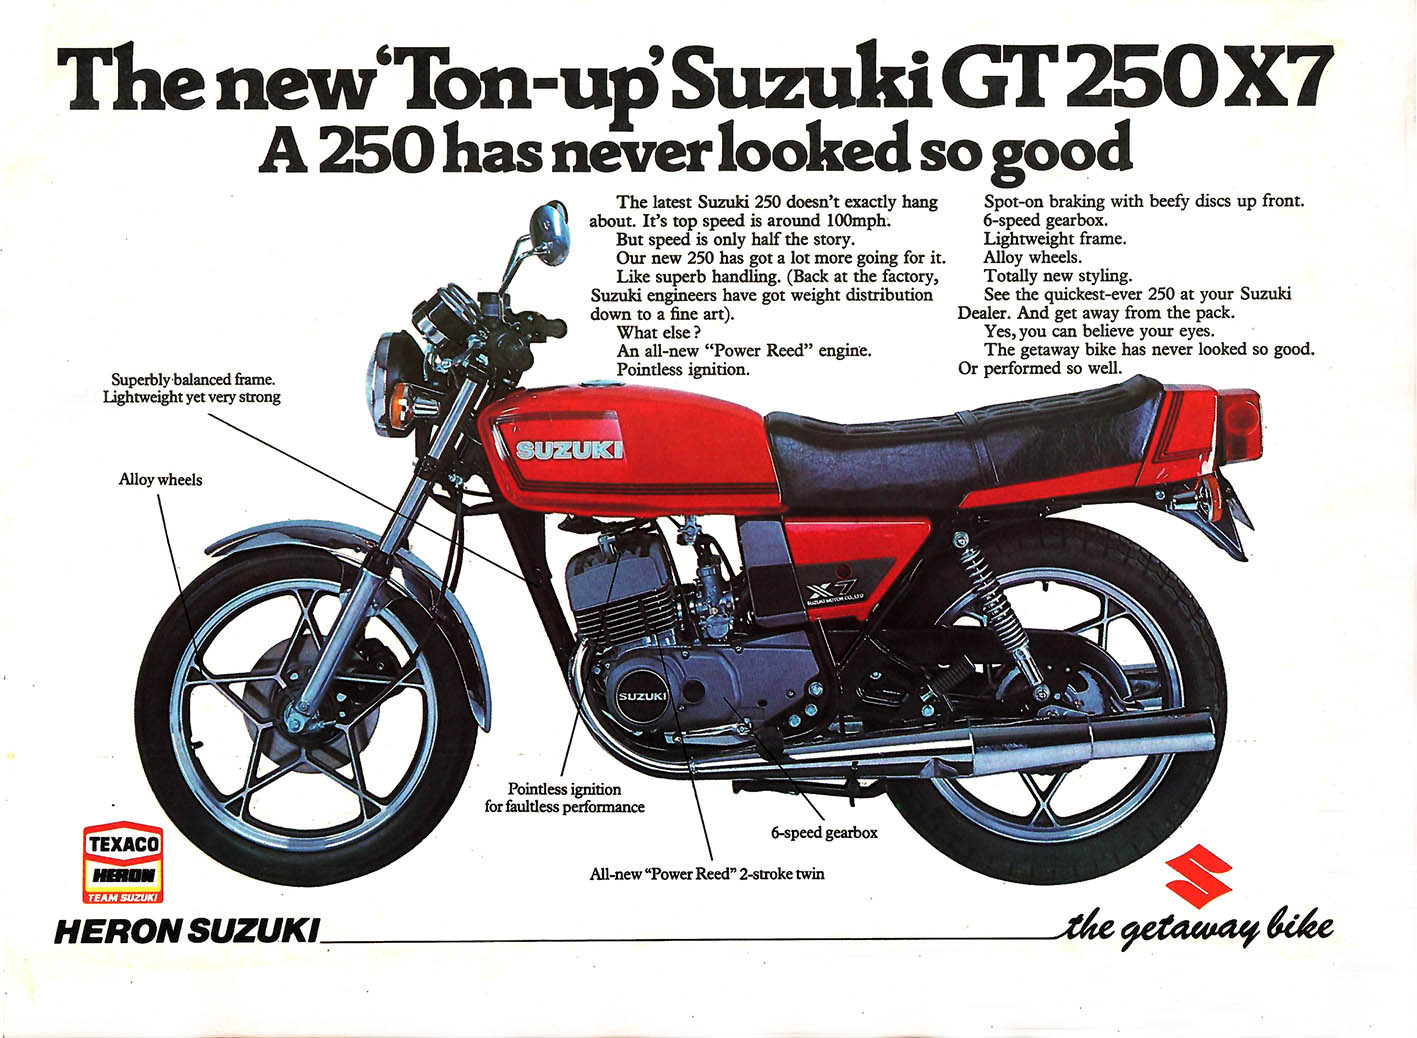 Suzuki GT250 X7 advert